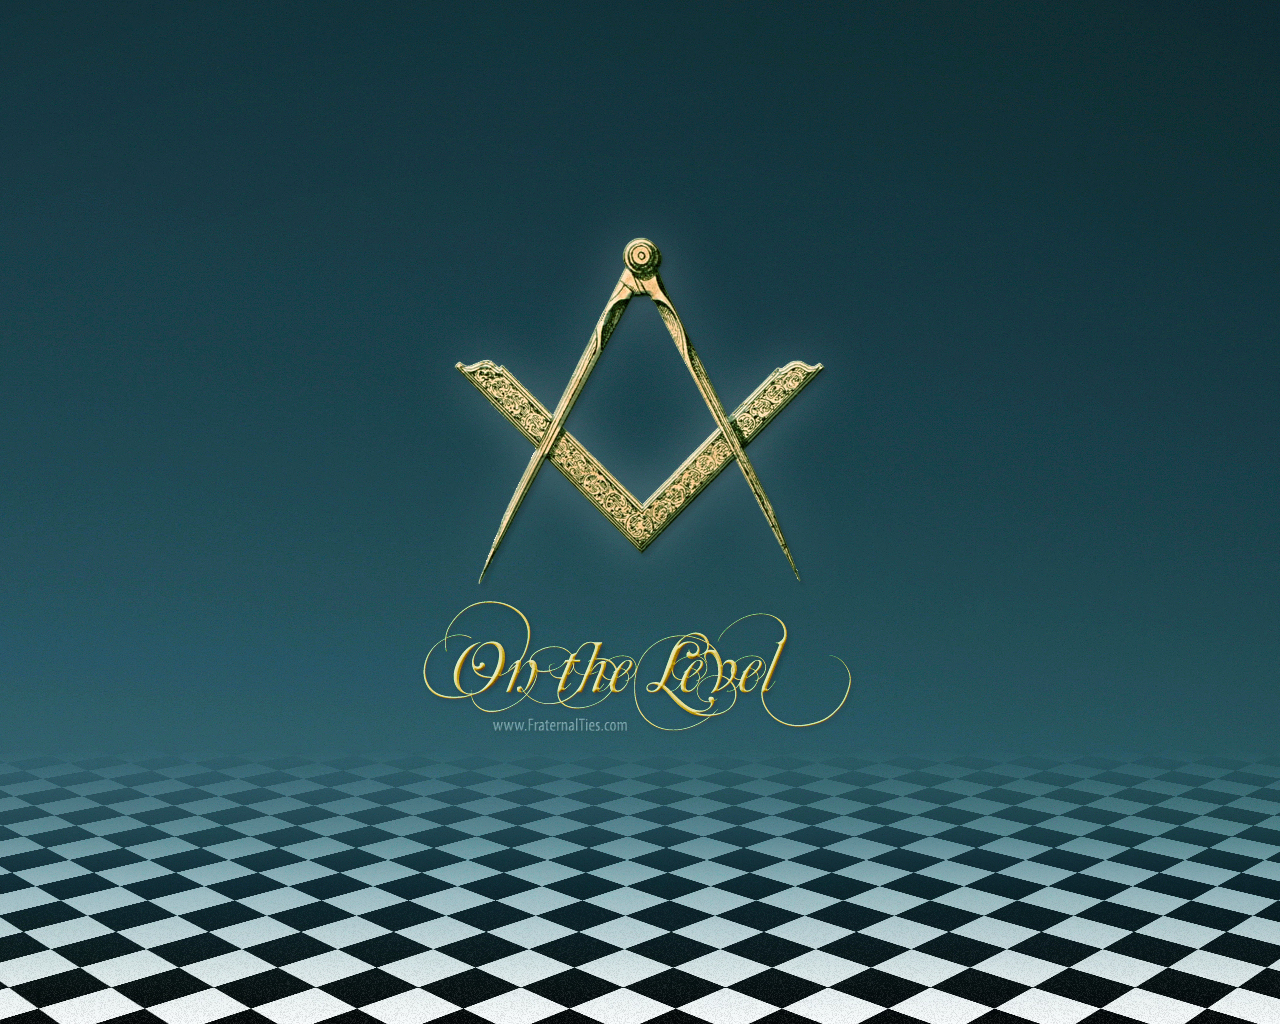 Masonic Fraternalties Neckties On The Level Freemason 1399434 1280 1280x1024